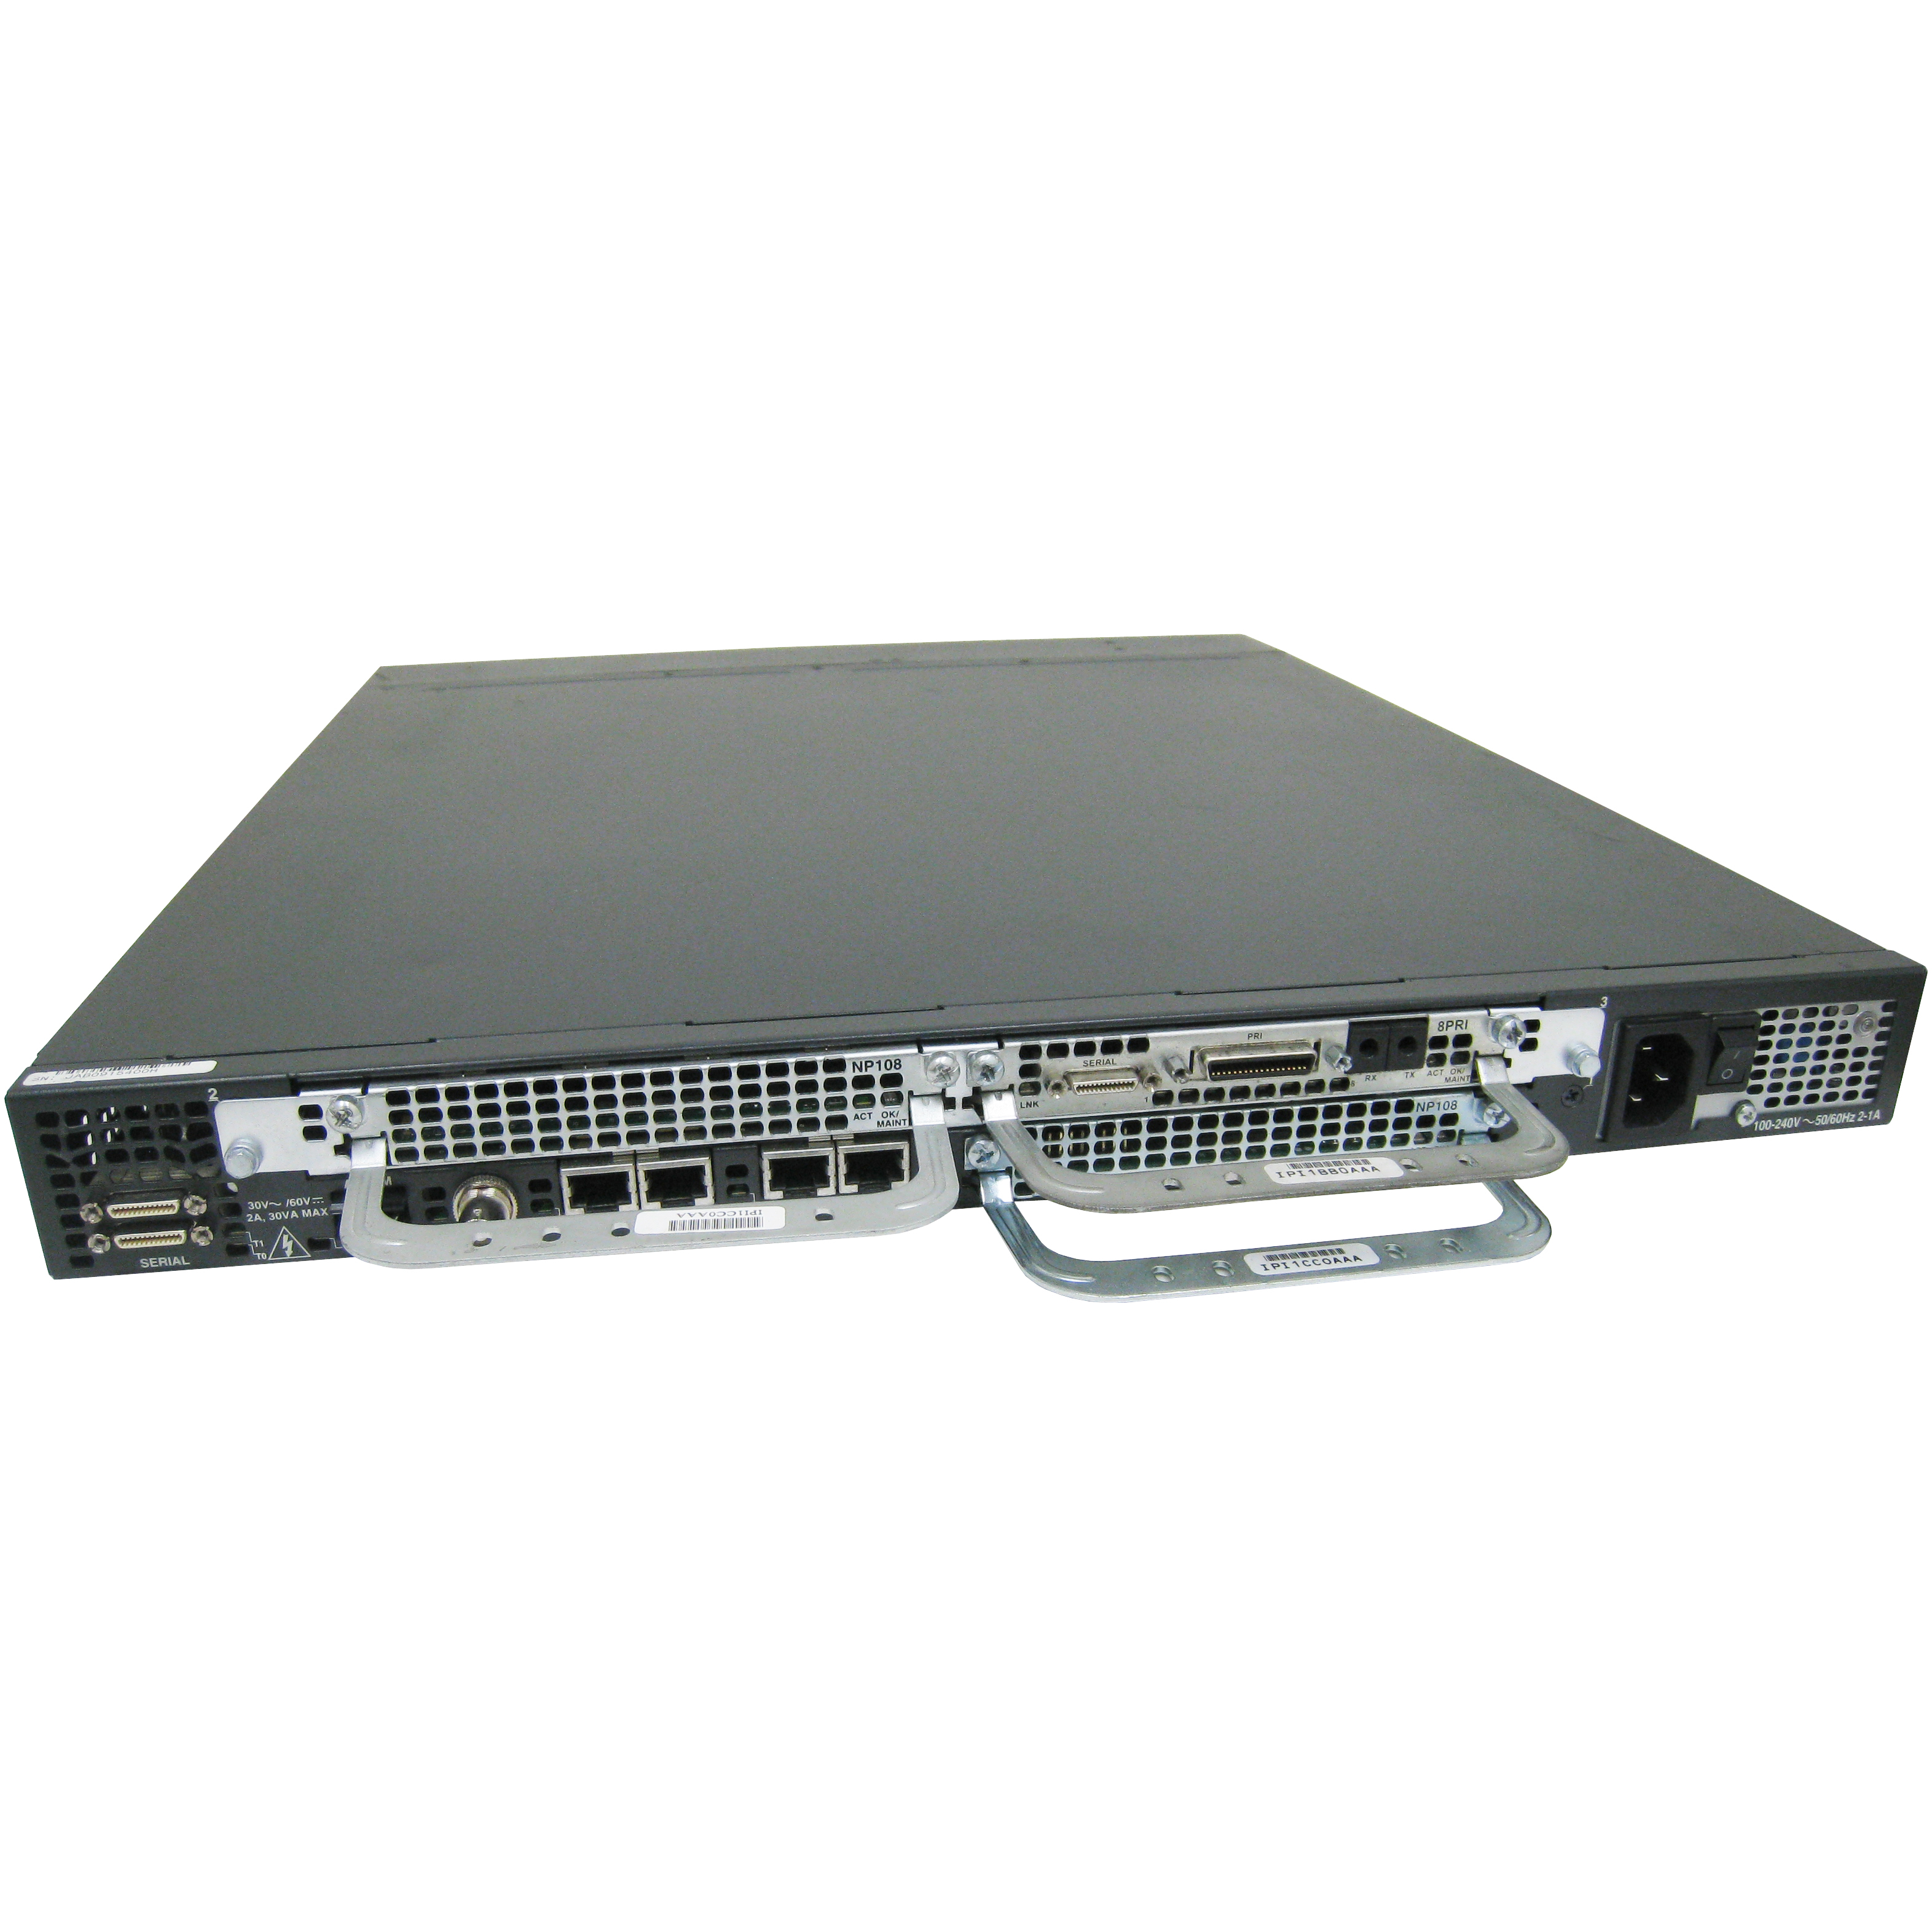 Cisco AS535-8T1-192-AC-V